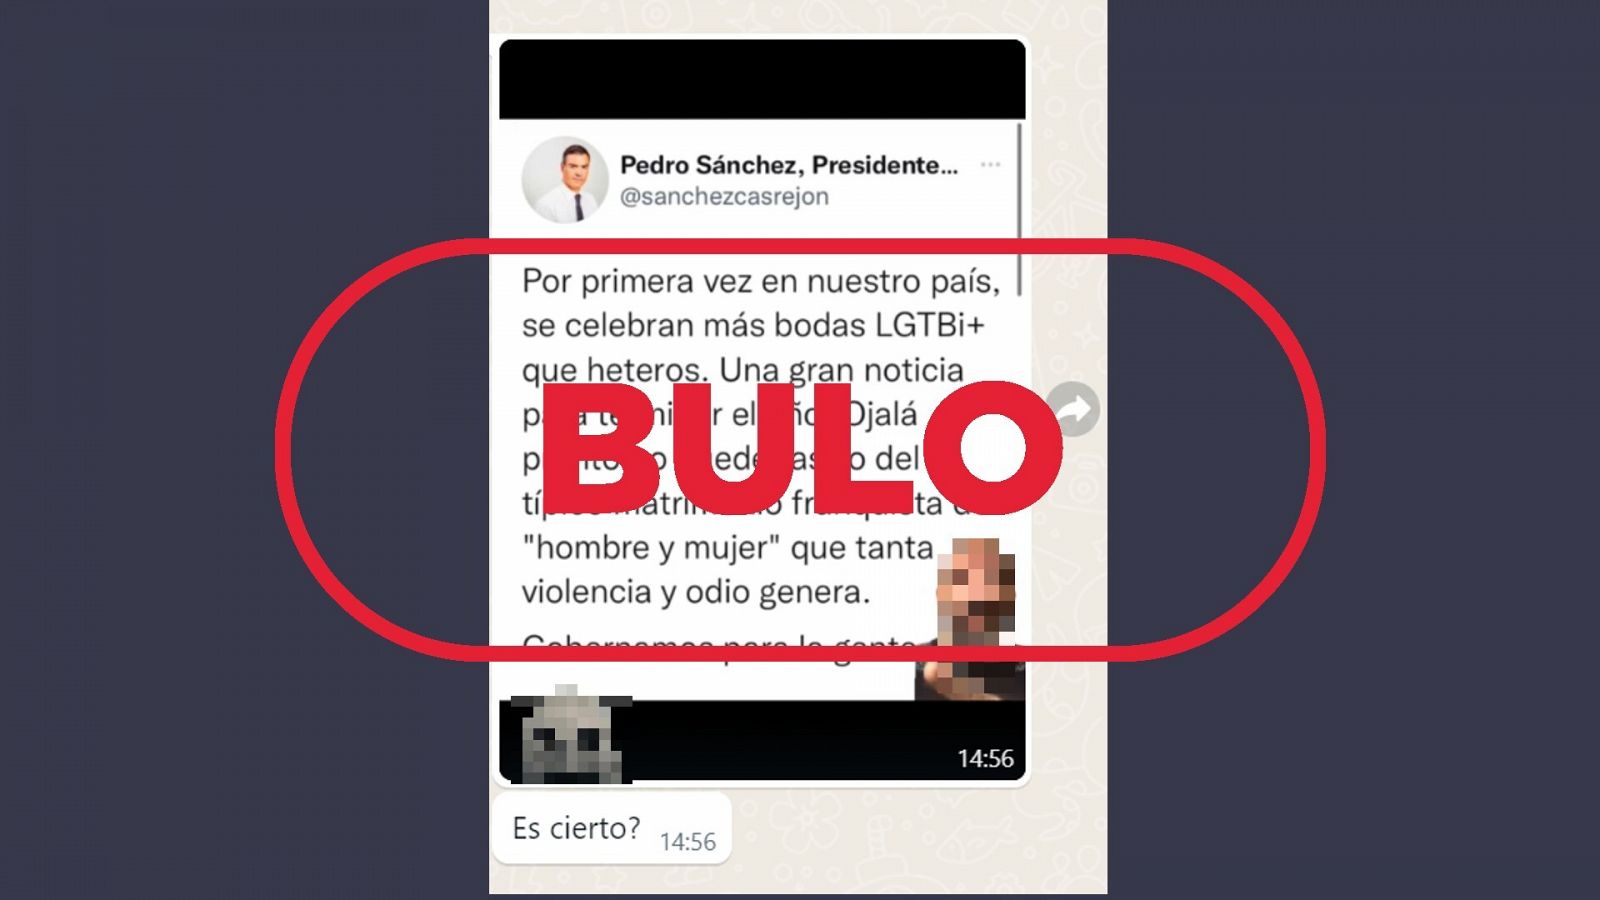 Mensaje enviado al WhatsApp de VerificaRTVE con la captura del tuit de la cuenta parodia de Pedro Sánchez, con el sello 'bulo' en rojo